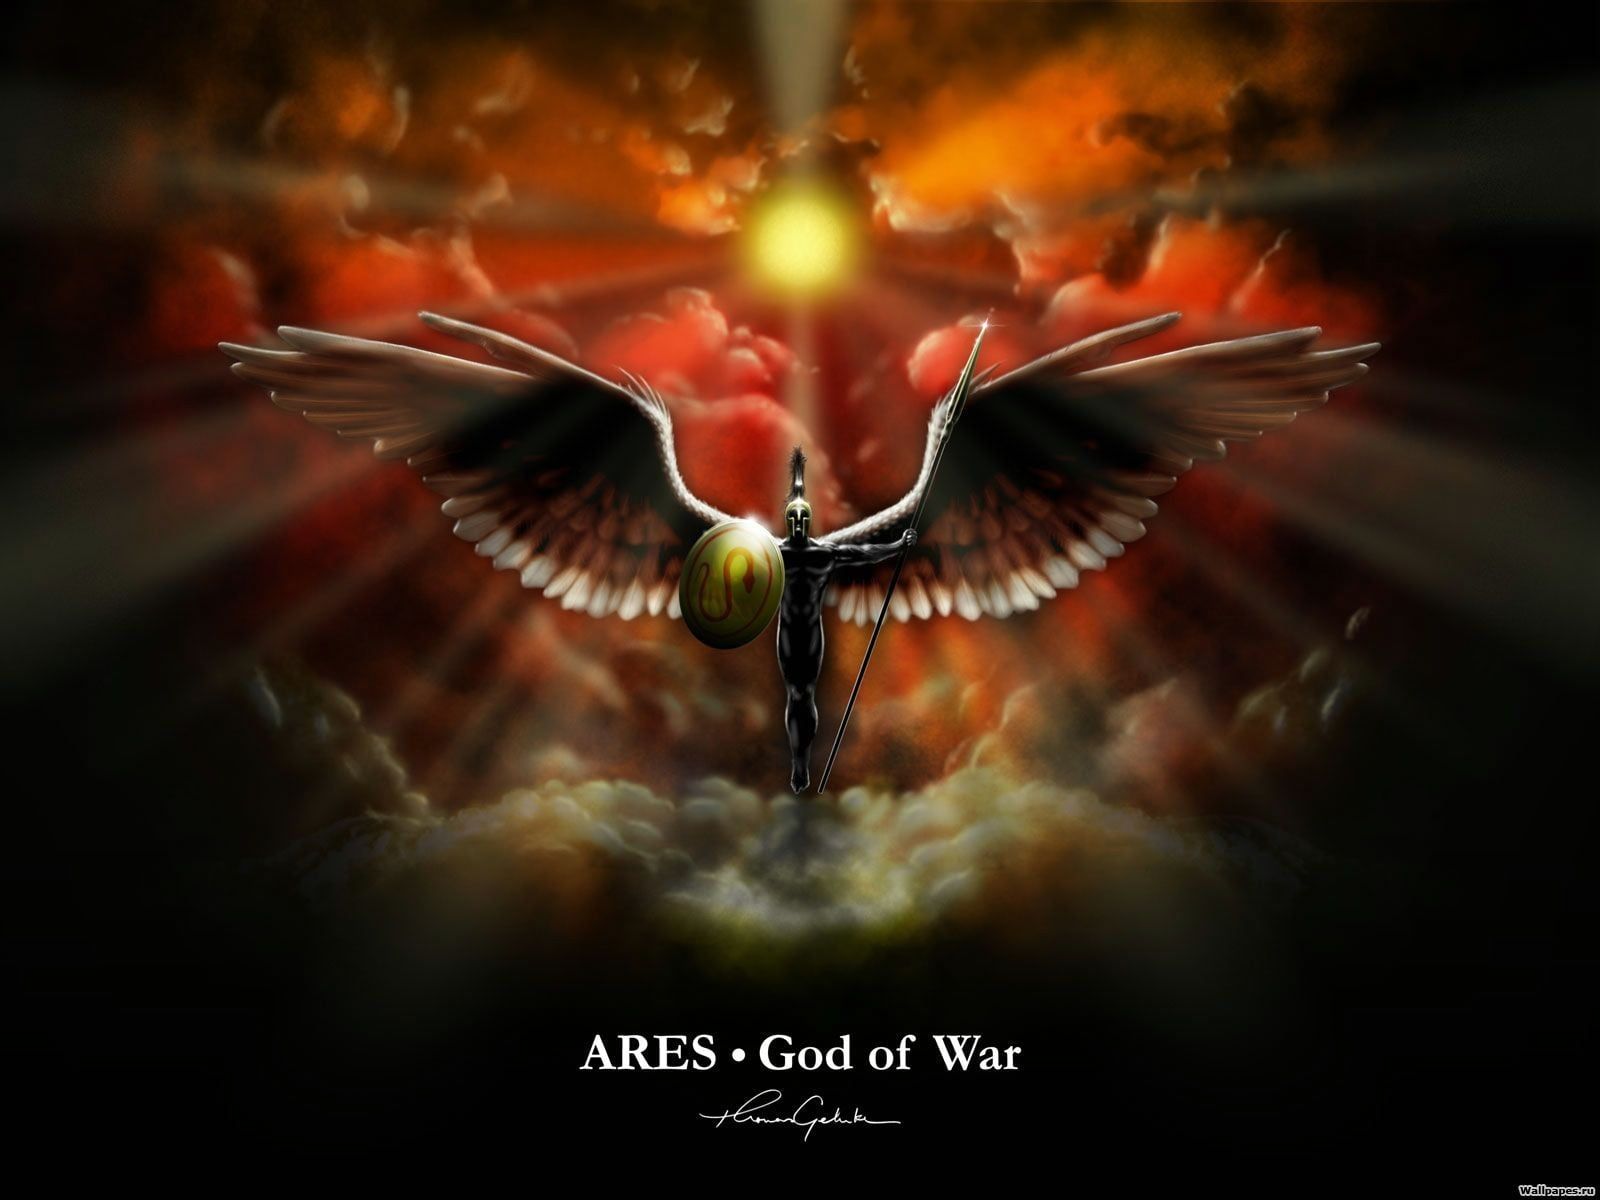 Ares God of War illustration, Ares, Greek mythology, mythology